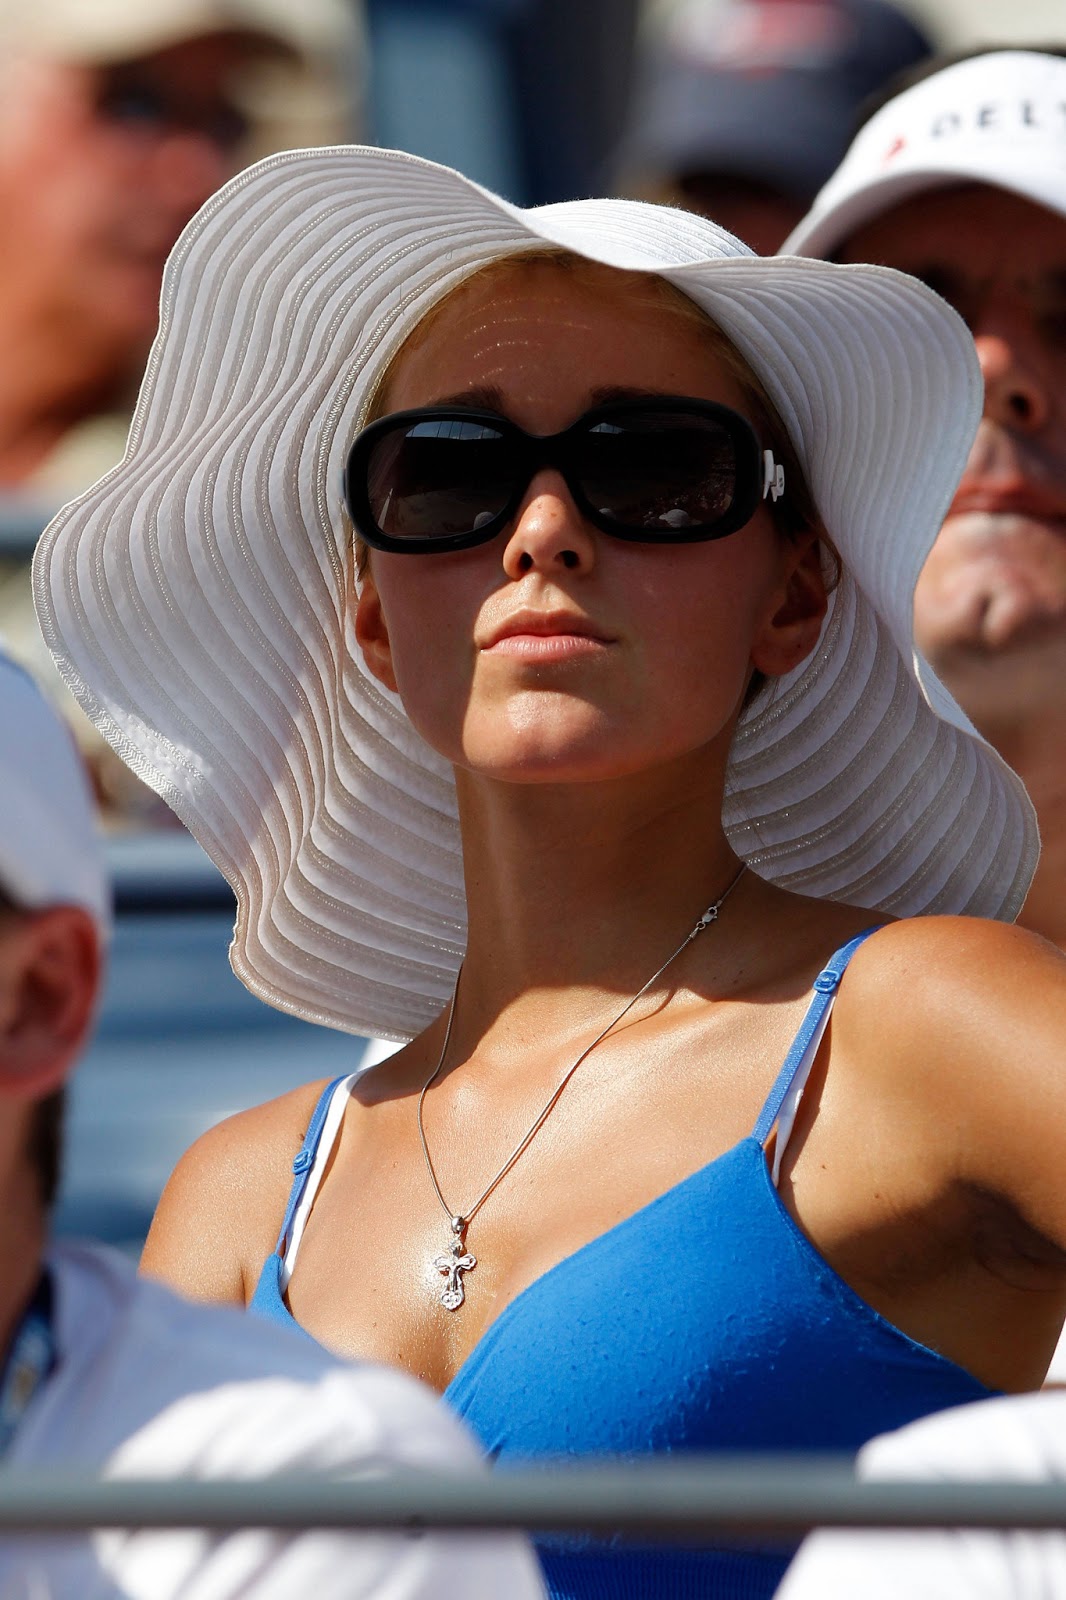 Long Tennis: Novak djokovic girlfriend jelena ristic1066 x 1600